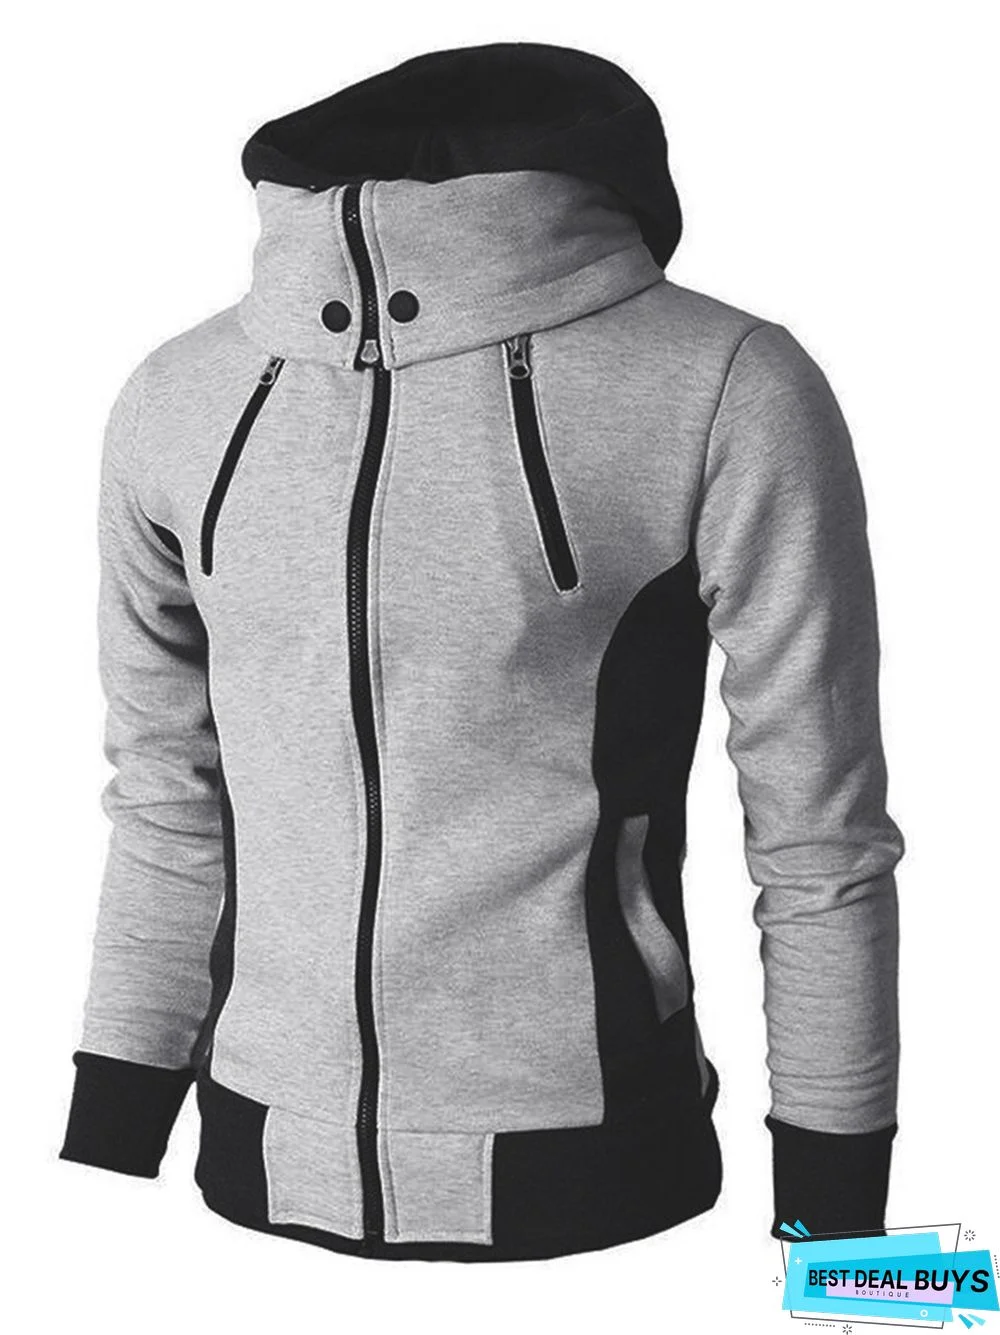 Men's Hooded Zipper Casual Sports Jacket